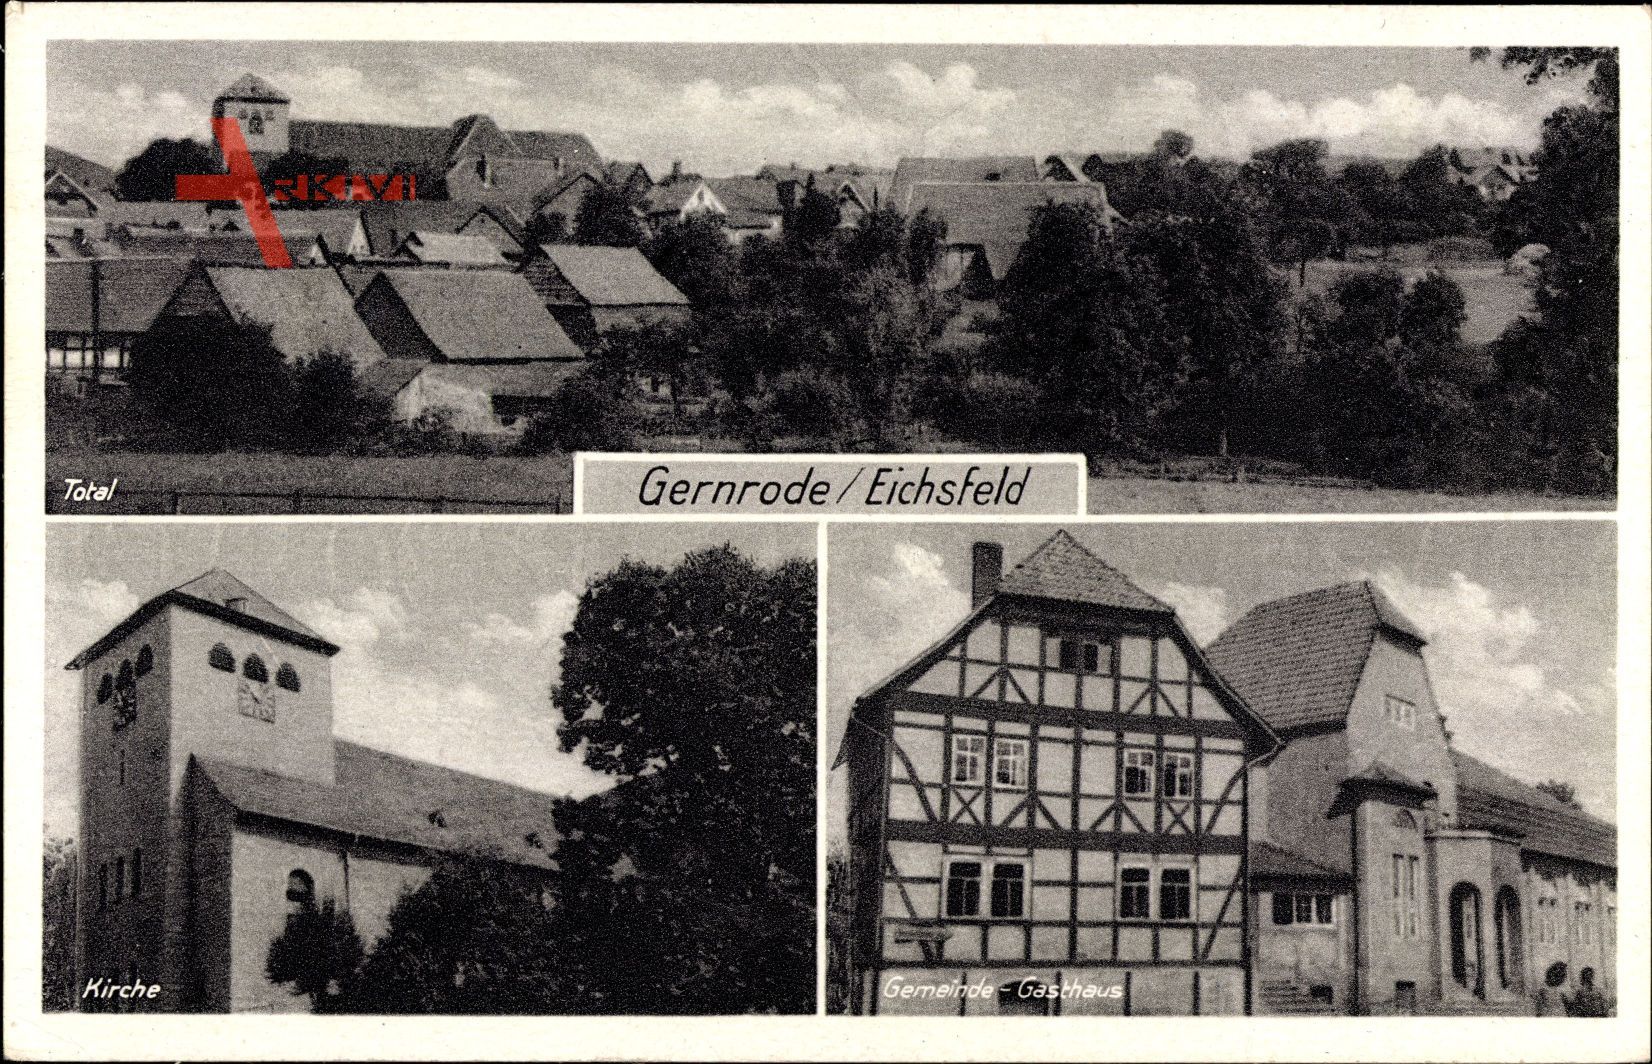 Gernrode im Harz, Kirche, Gemeinde Gasthaus, Totale, Fachwerkhaus